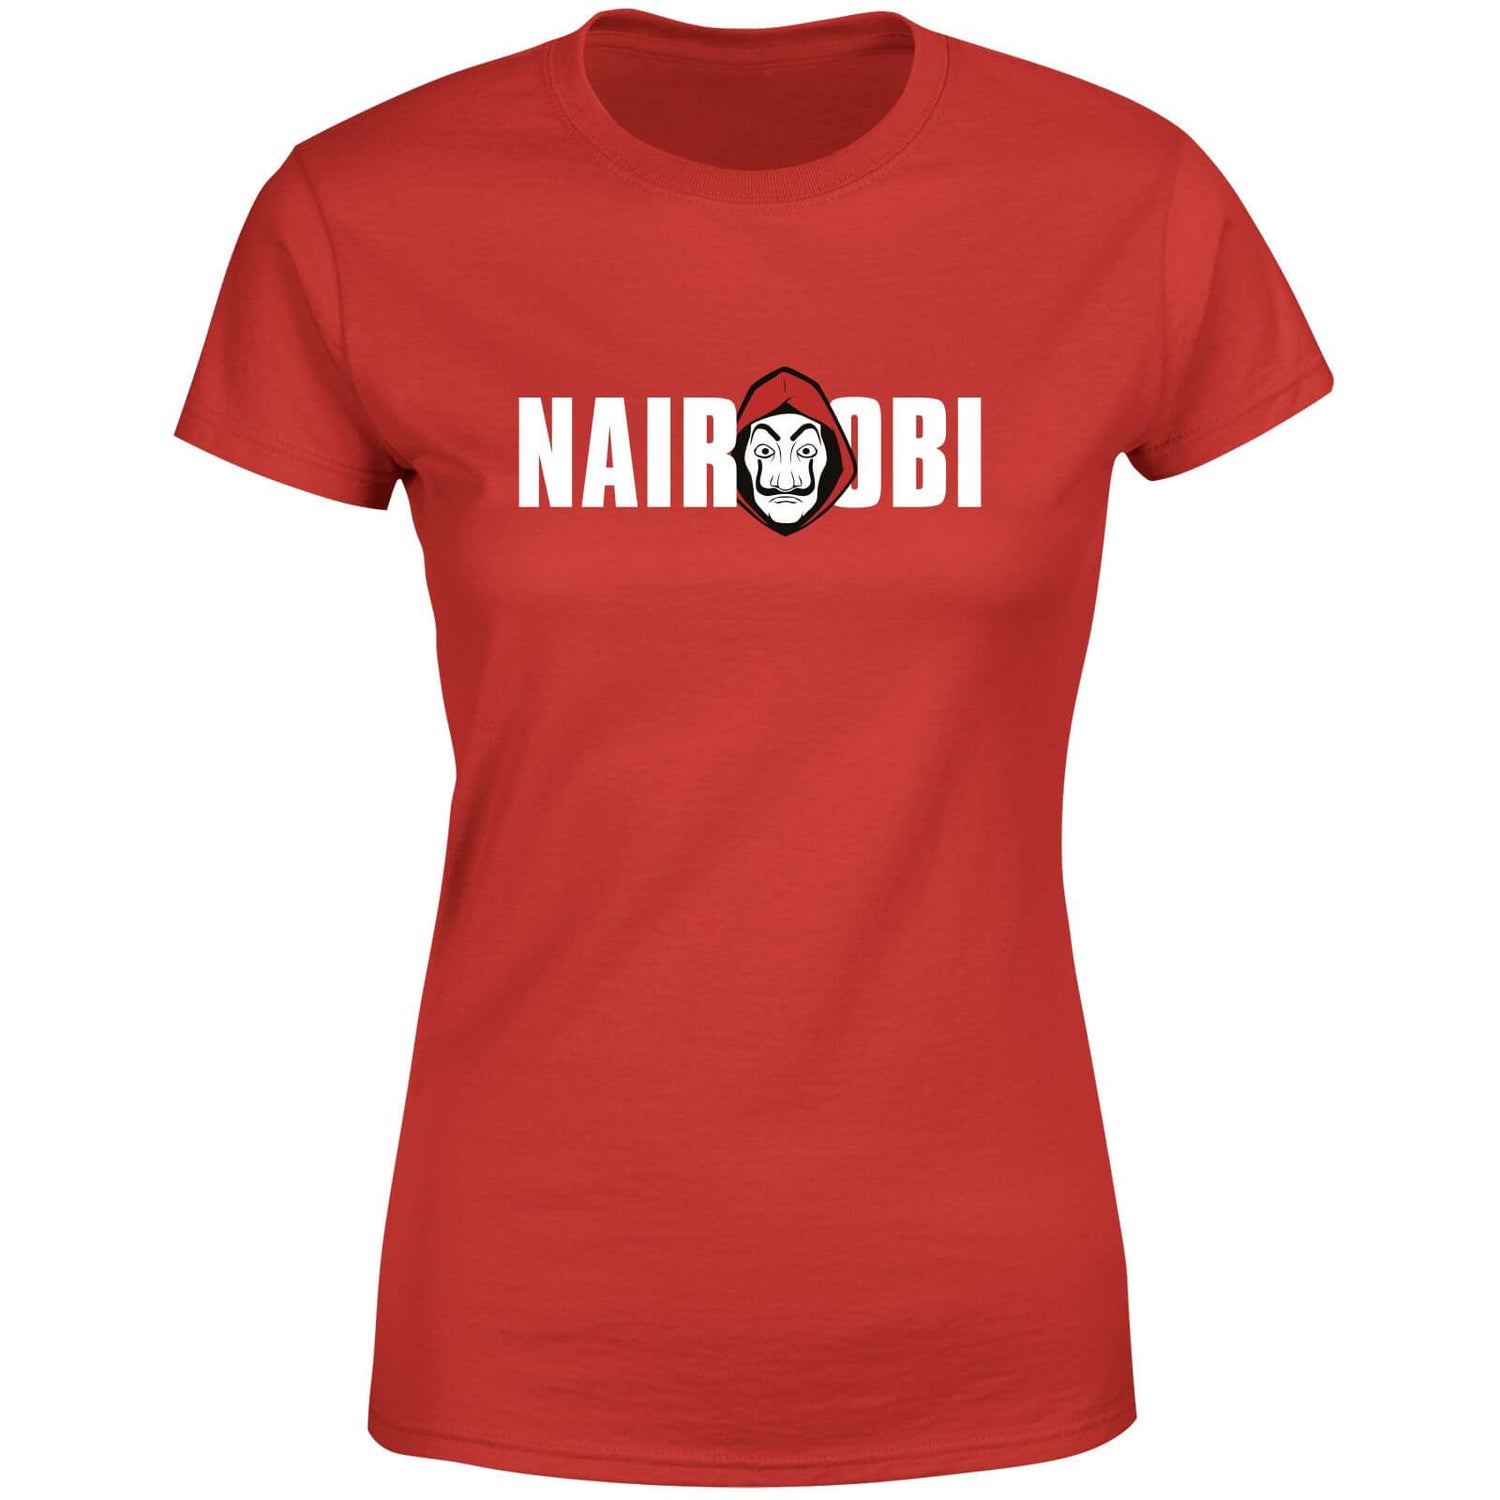 Money Heist Nairobi Women's T-Shirt - Red